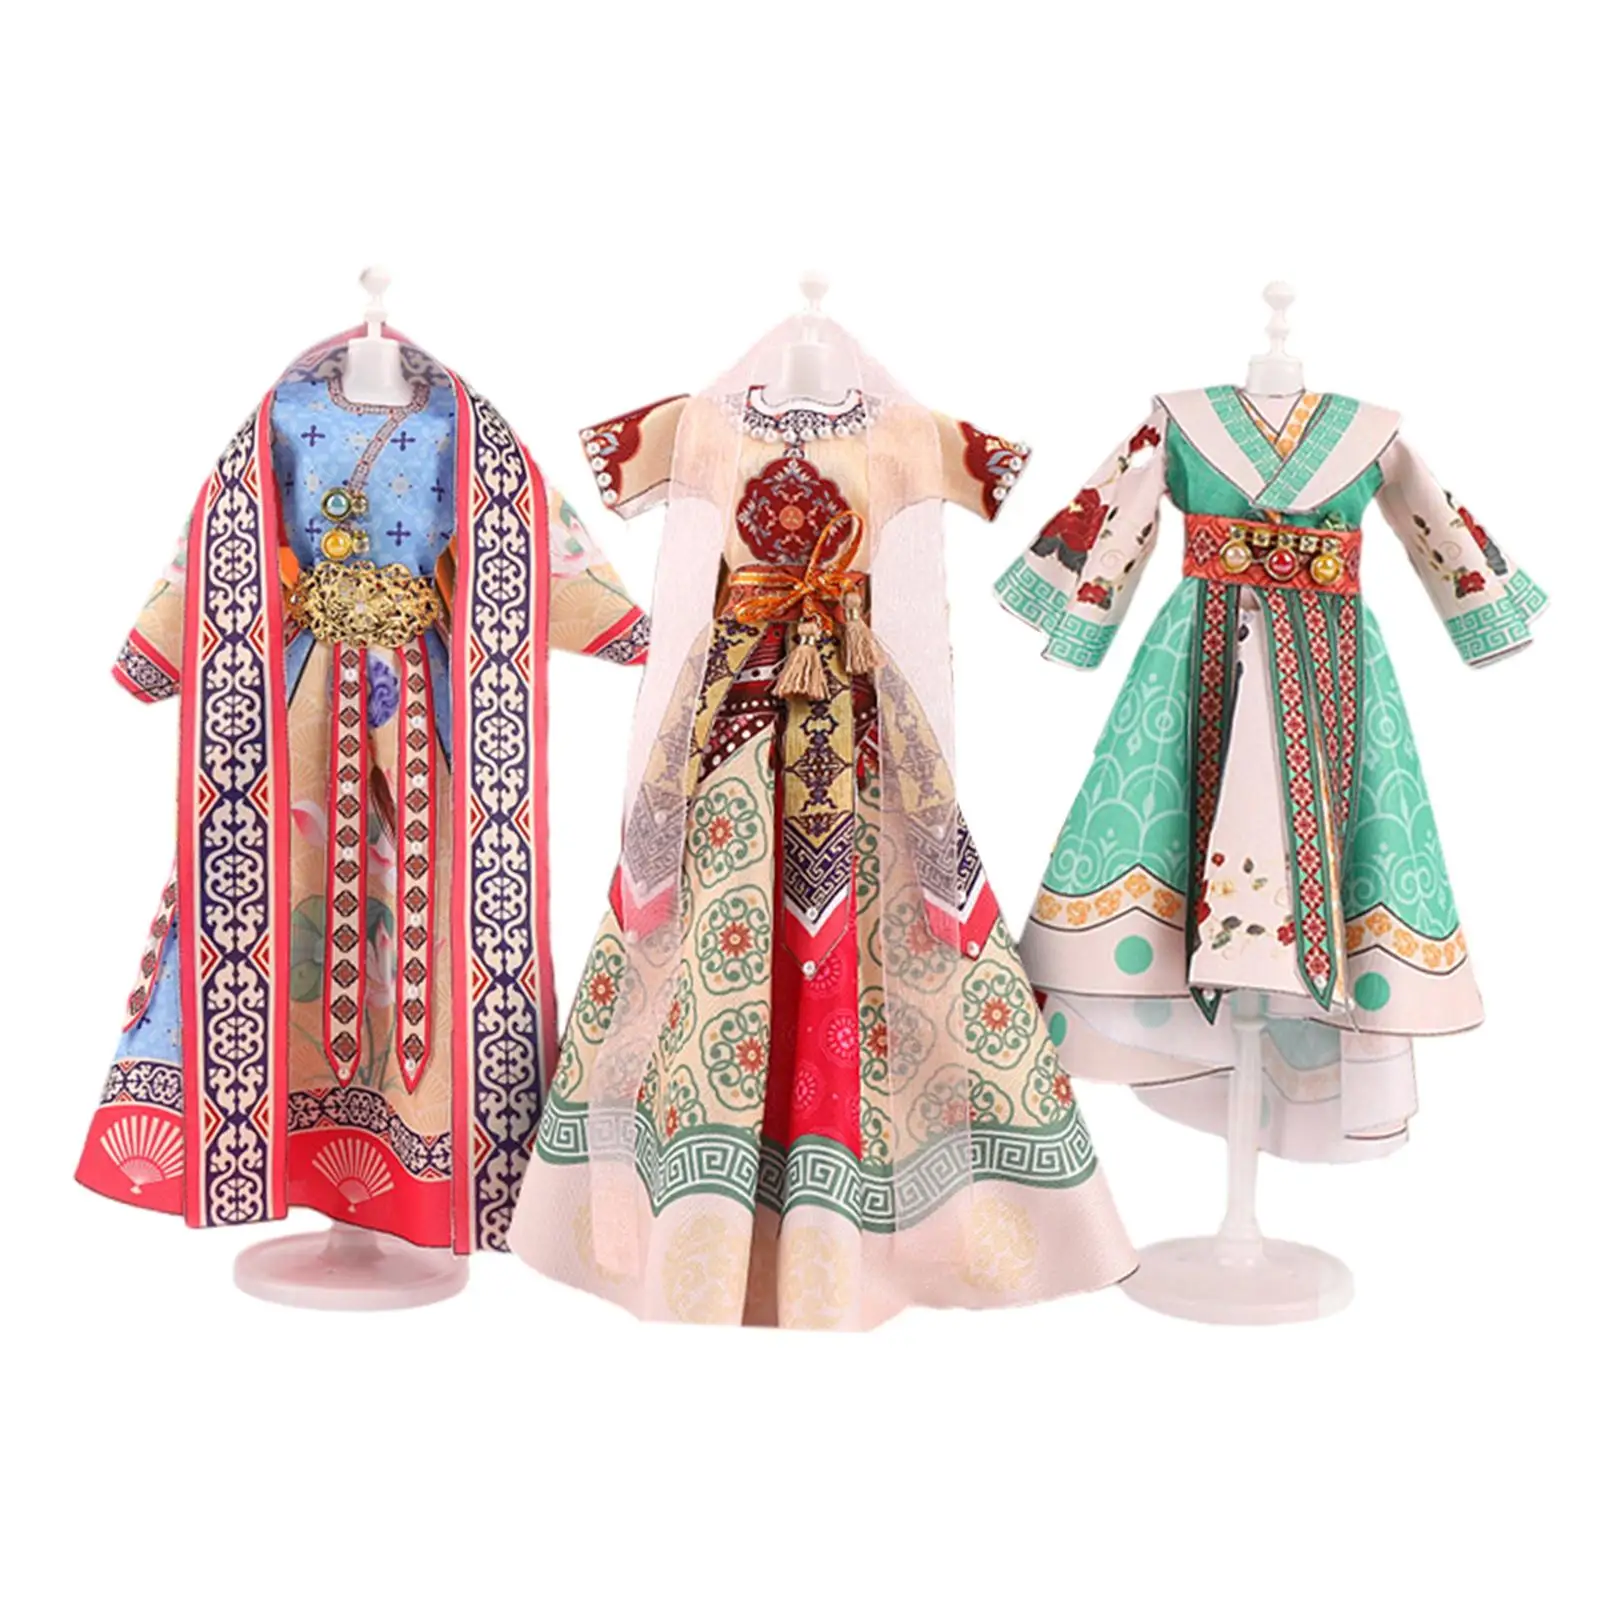 

Одежда для рукоделия Hanfu, игрушки, детские наборы для шитья, кукла, одежда, дизайн, творчество «сделай сам», искусство, рукоделие для детей